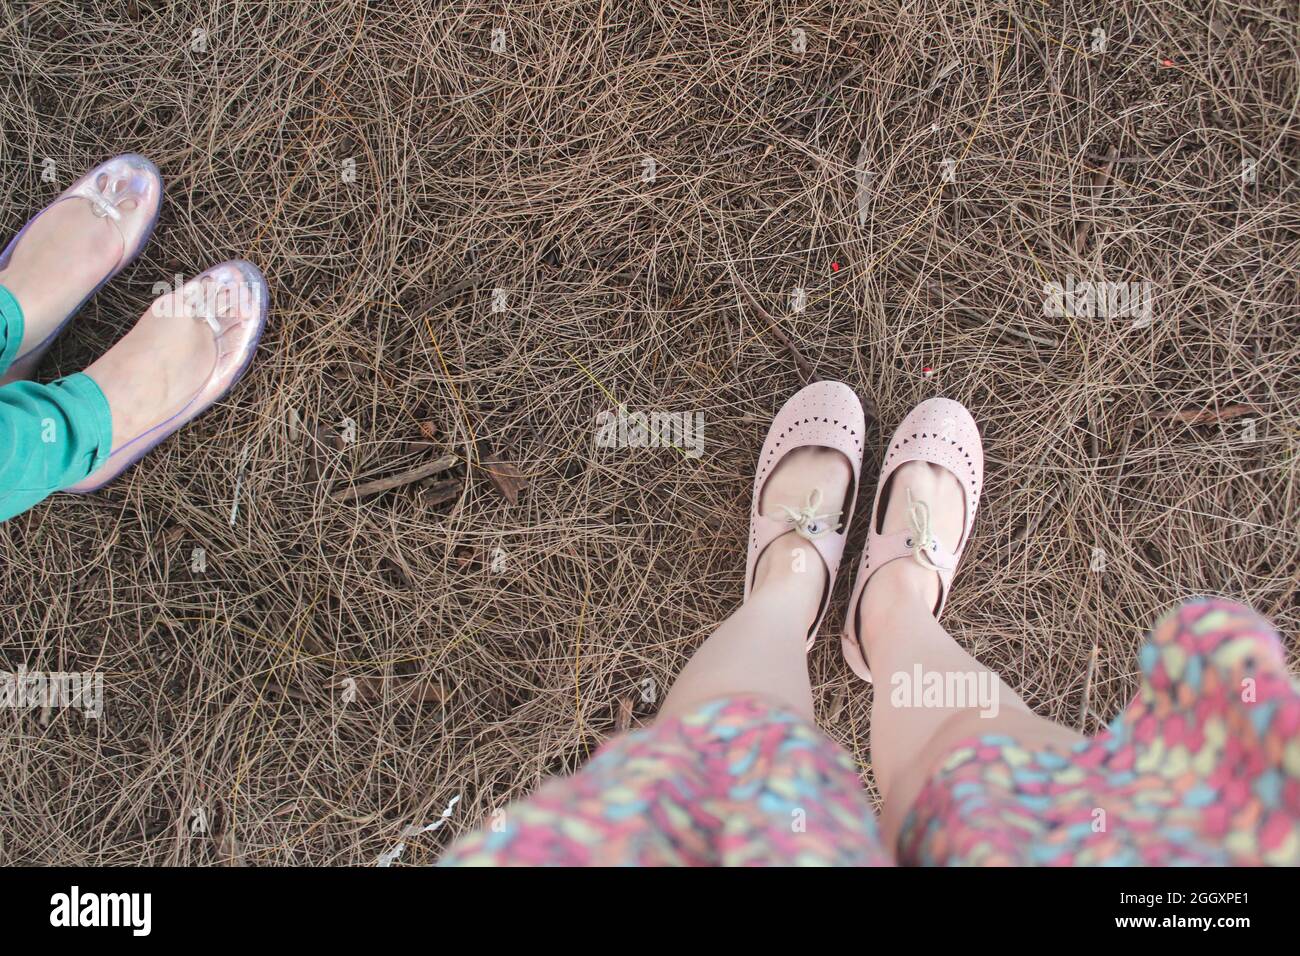 Dos mujeres de pie sobre heno seco y pasto con sus pies mostrando. Una mujer está usando zapatos planos claros y la otra está usando zapatos planos de color rosa suave. Foto de stock